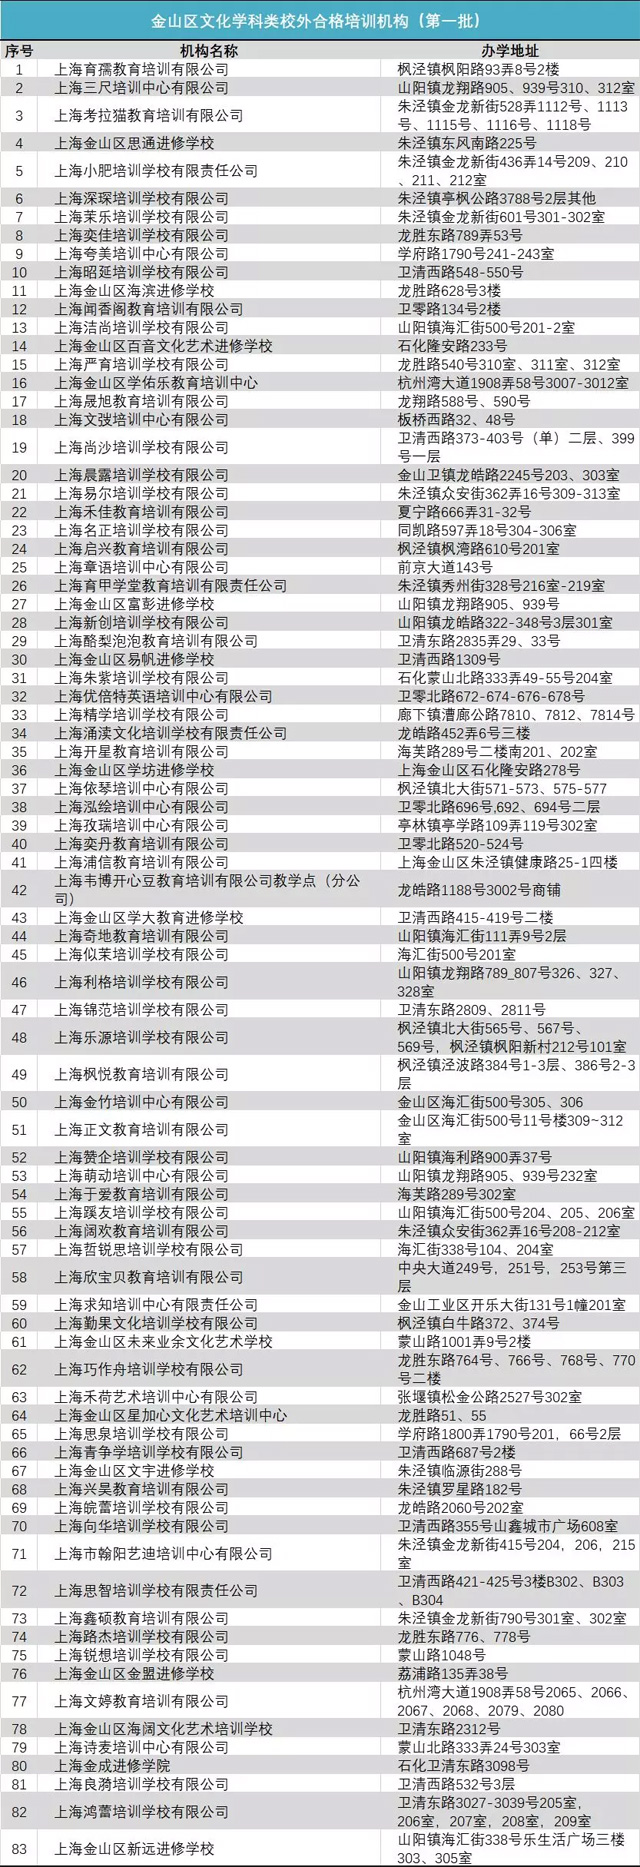 2、青浦区初中排名：你好，上海初中排名还有吗？ 